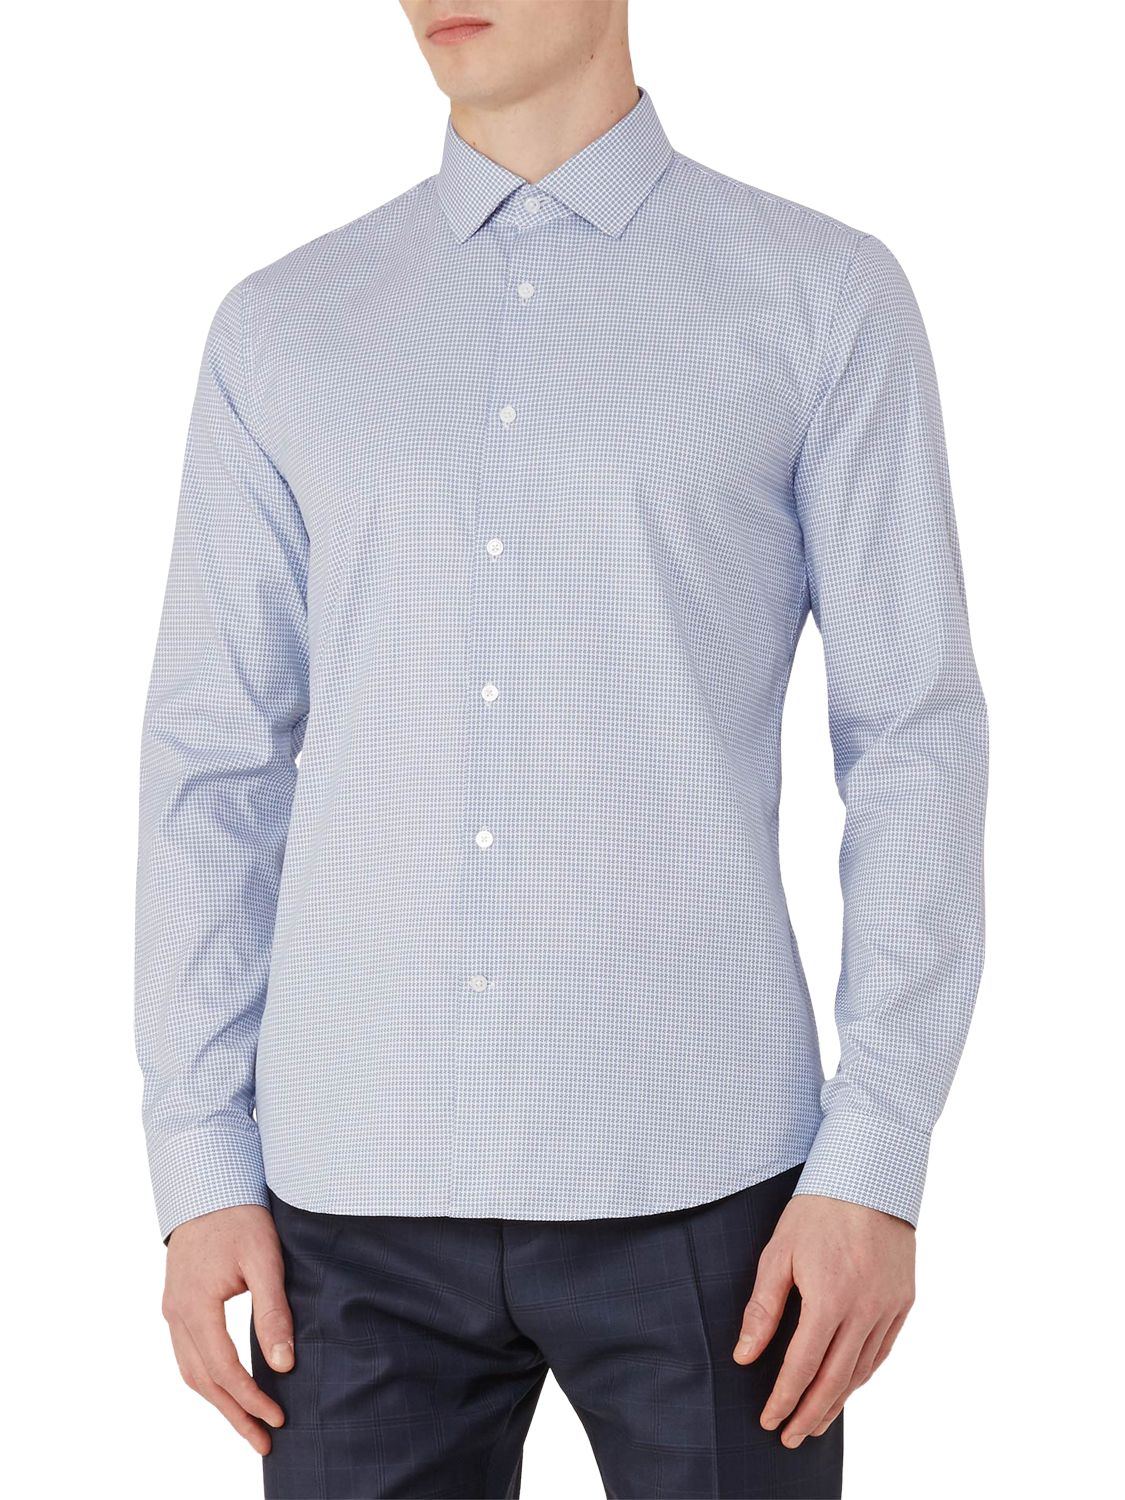 Reiss Mattusi Houndstooth Cotton Slim Fit Shirt, Soft Blue, S